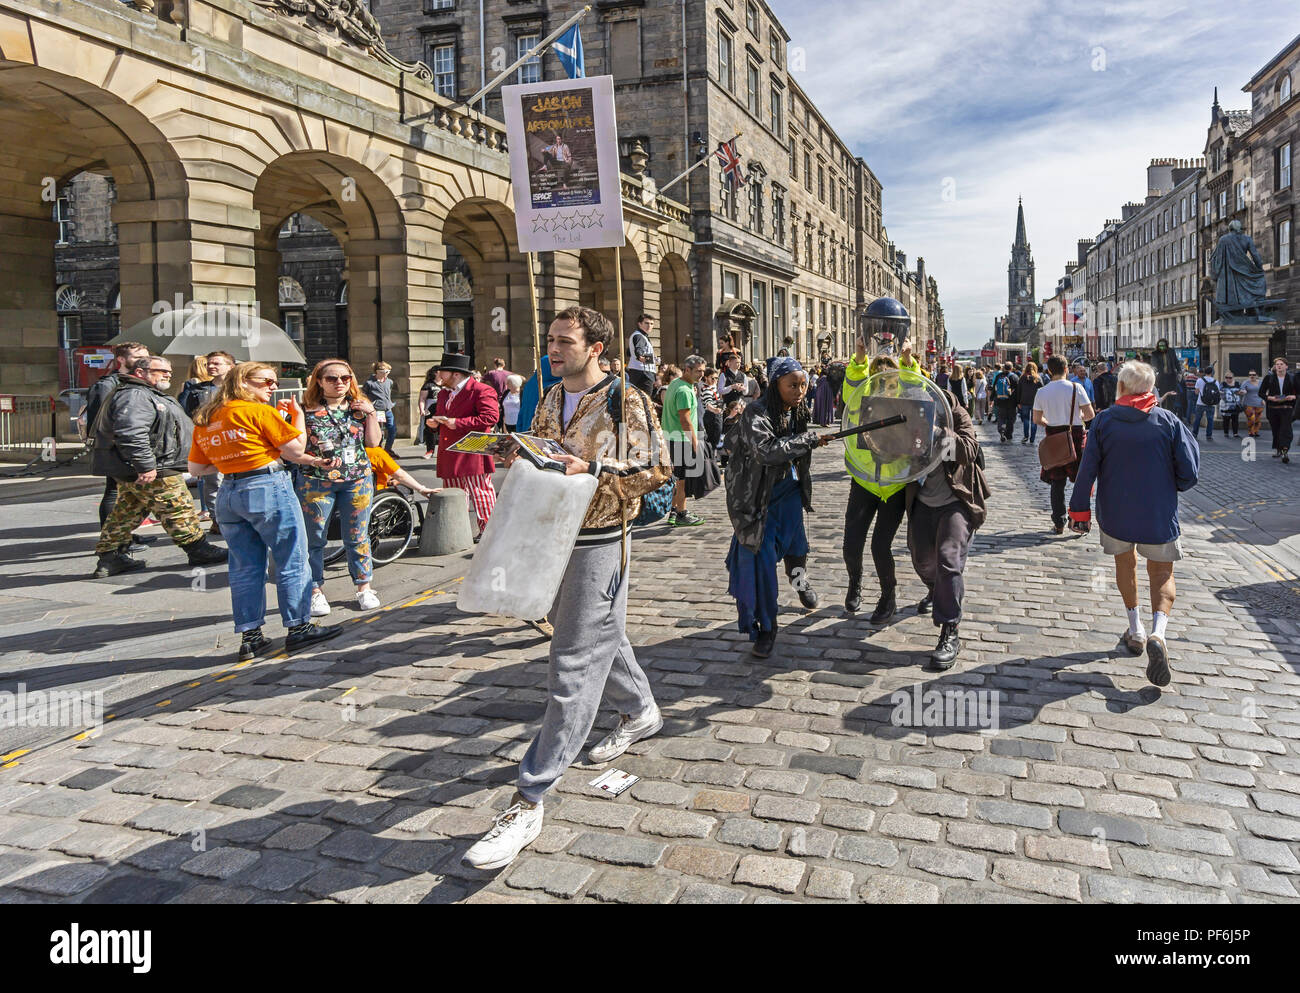 Jason und der Areonauts froup am Edinburgh Festival Fringe 2017 durchführend in der High Street Teil der Royal Mile in Edinburgh, Schottland Großbritannien Stockfoto